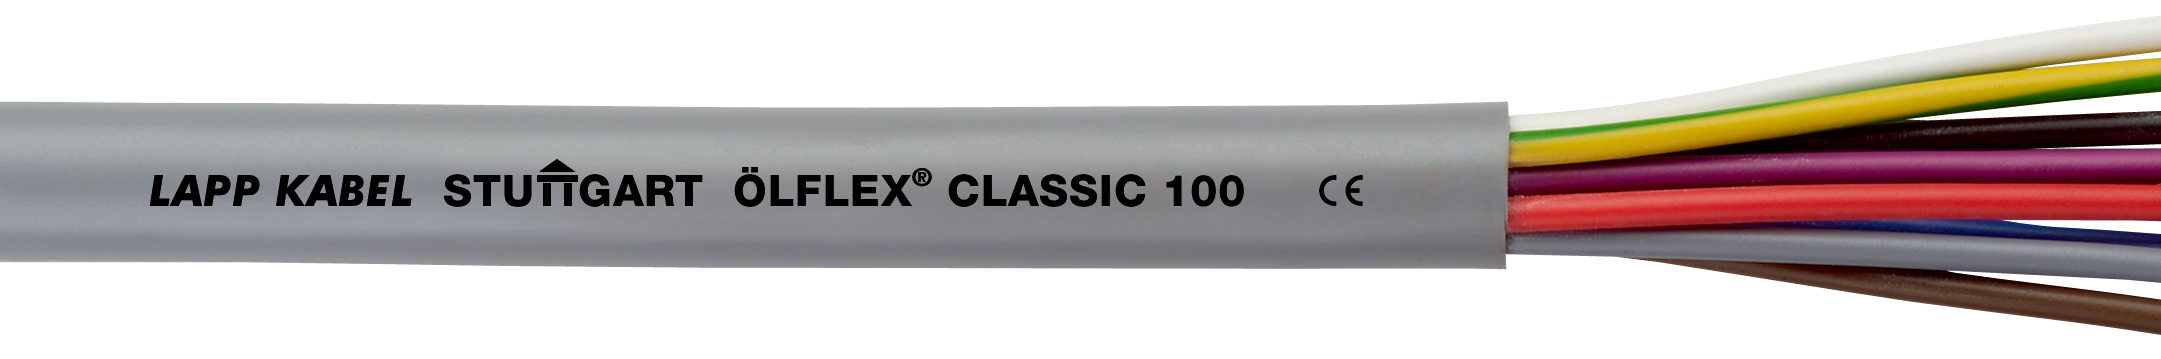 LAPP ÖLFLEX CLASSIC 100 2G 4 mm²